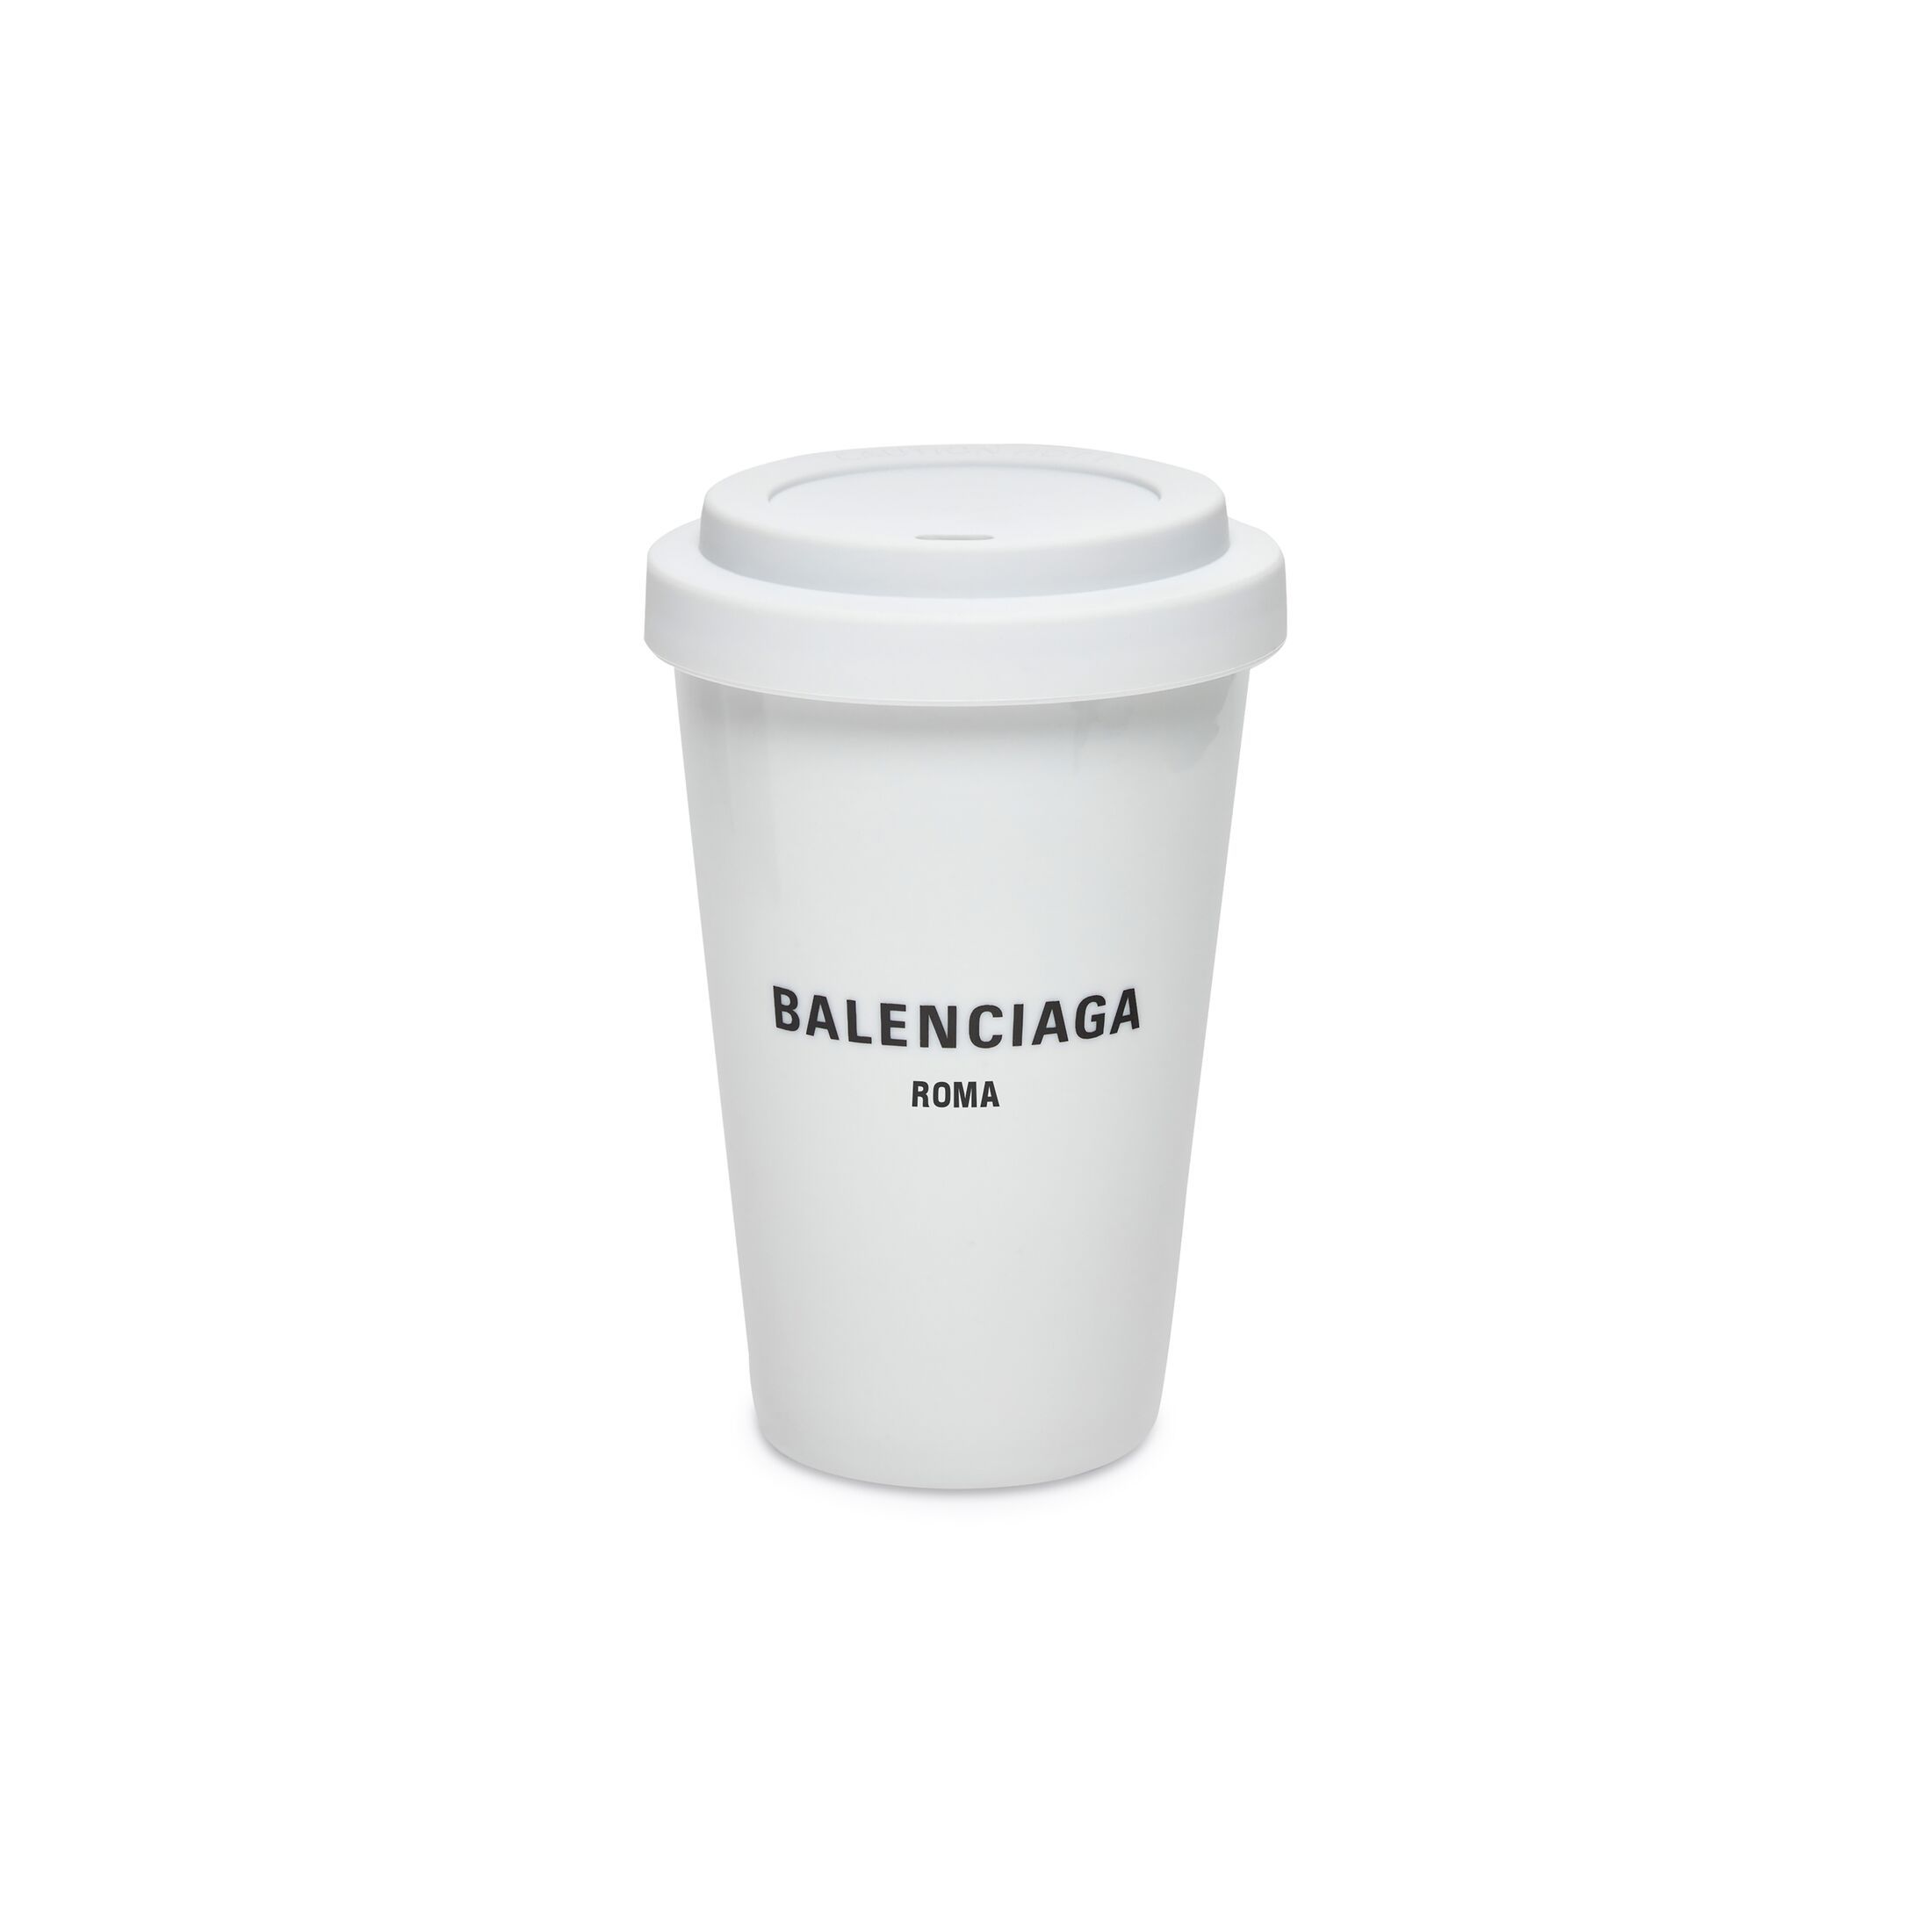 roma coffee cup | Balenciaga